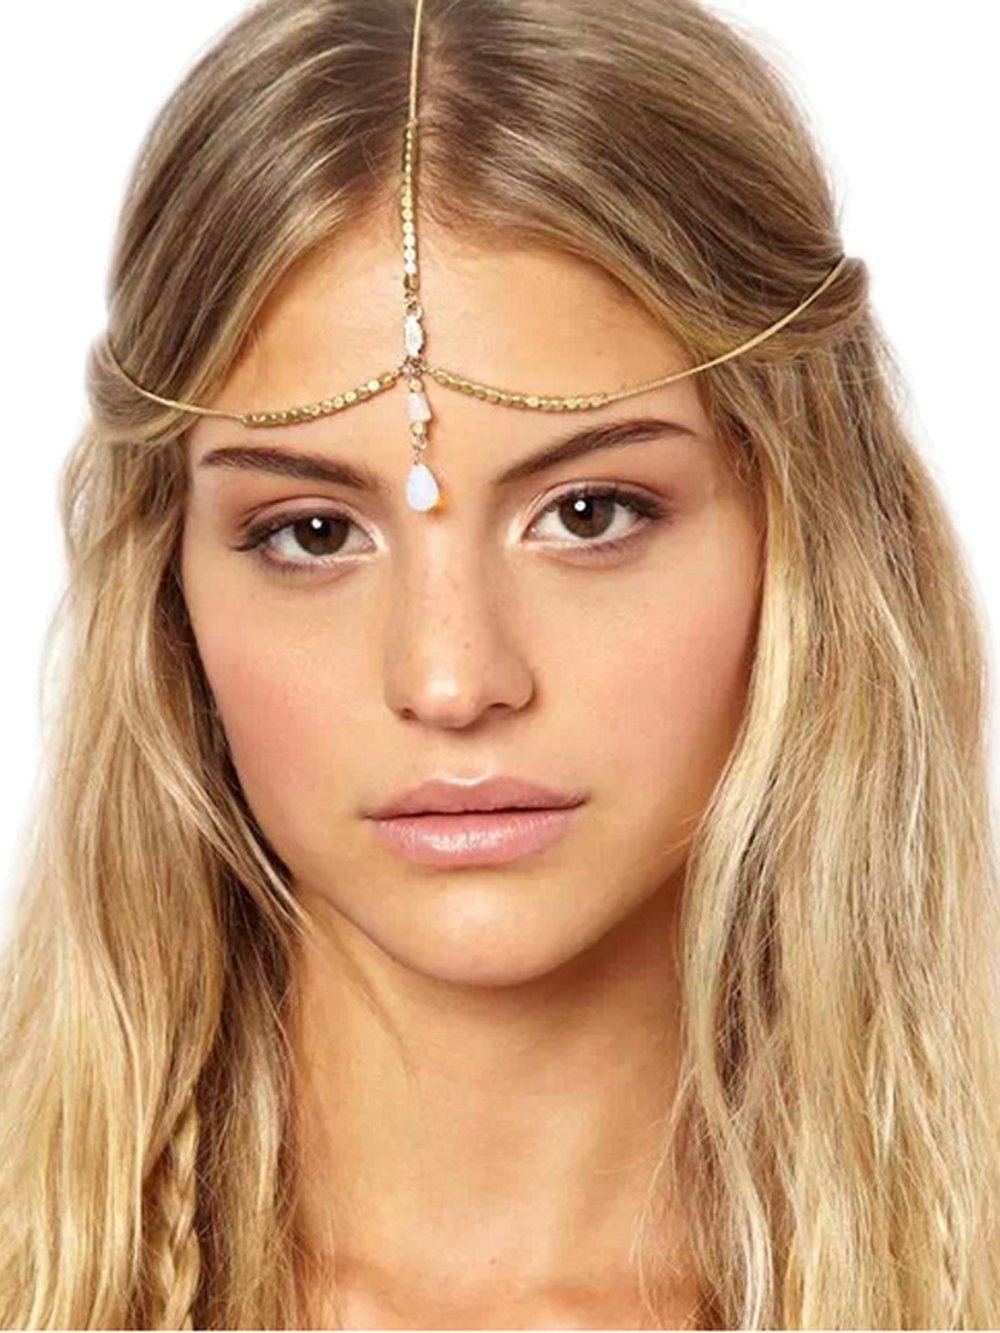 [Australia] - Yean Boho Opal Head Chain Gold Wedding Bride Hair Chains Bridal Crystal Hair Accessories for Women and Girls 